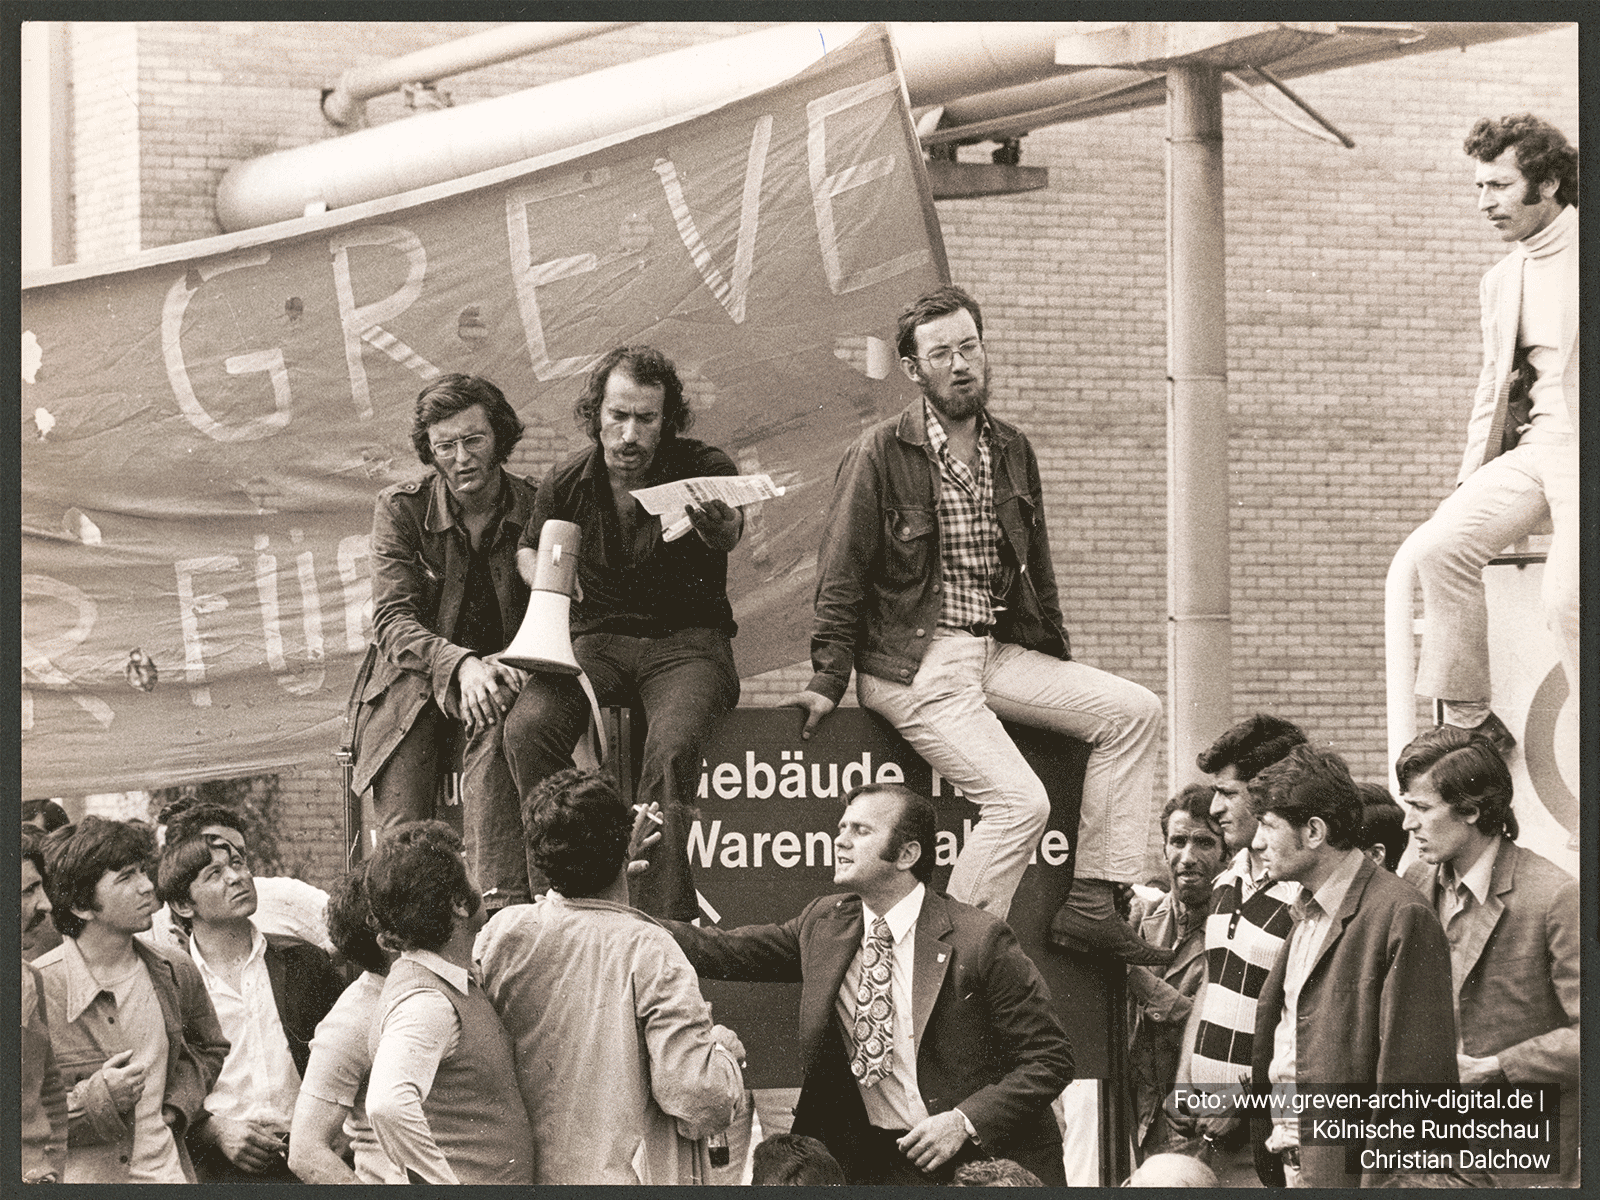 Einer der Streikführer, Baha Türgün, mit Megaphon bei dem Streik in den Ford-Werken in Köln-Niehl im August 1973. Foto vom 28.08.1973. Foto: www.greven-archiv-digital.de | Kölnische Rundschau | Christian Dalchow